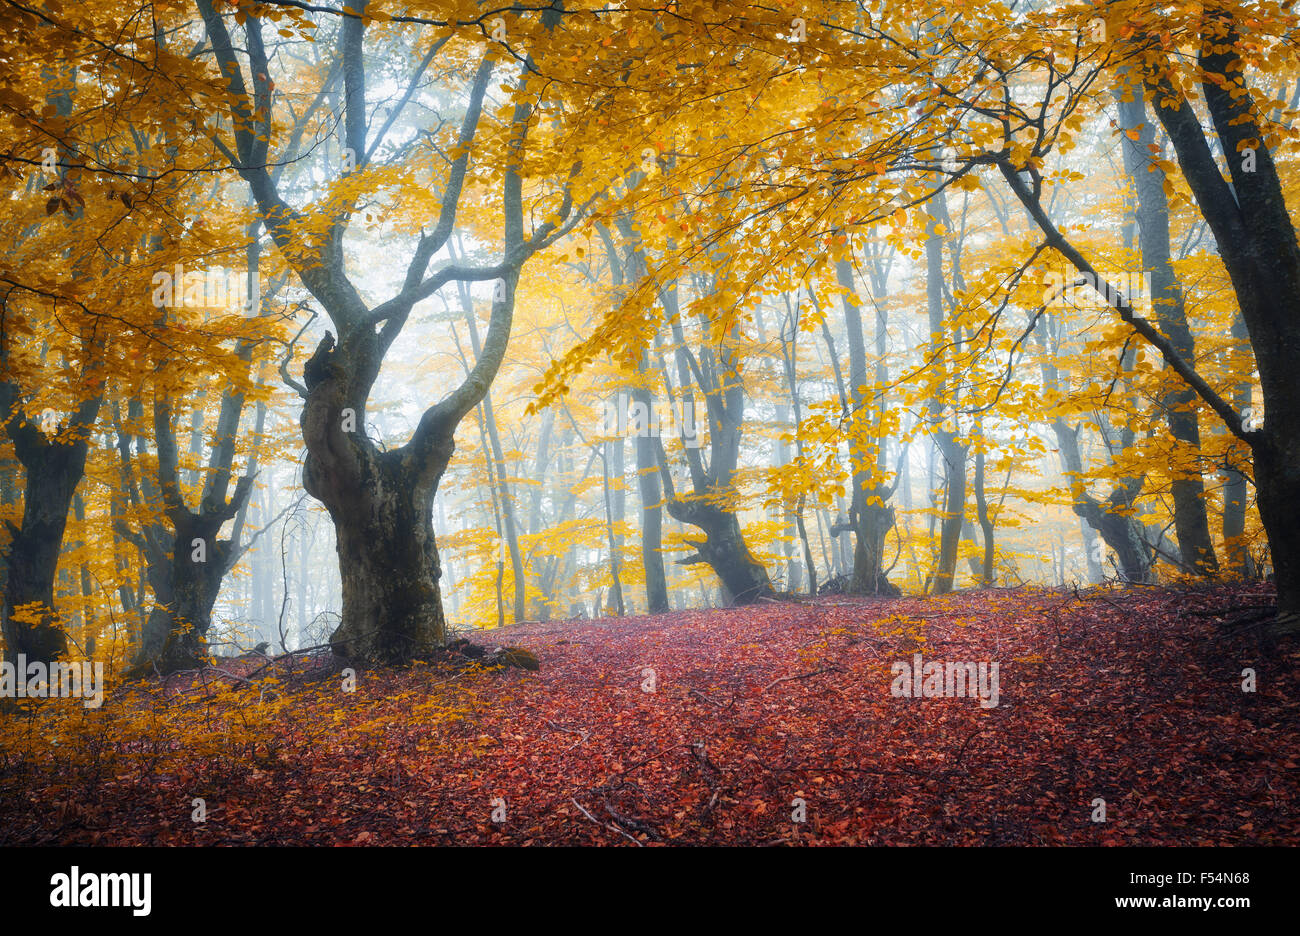 Sentier à travers un mystérieux dark old forest dans le brouillard. Matin d'automne en Crimée. Ambiance magique. Fairytale Banque D'Images